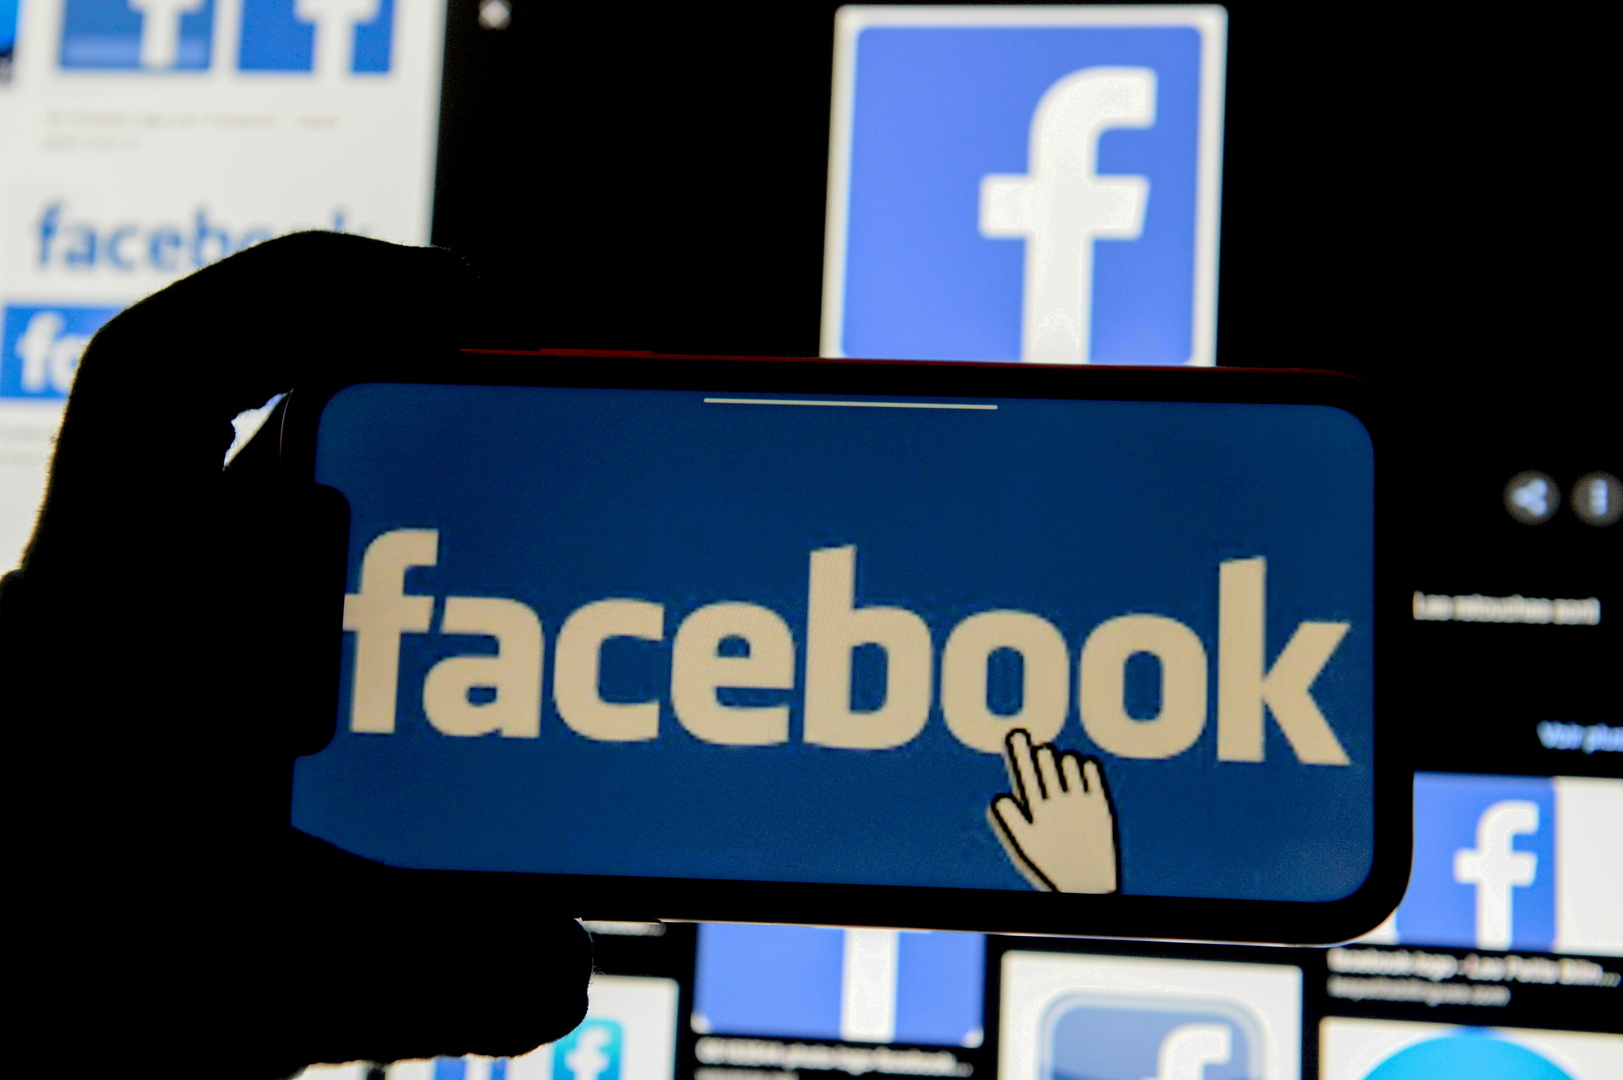 فيسبوك يطرح ميزة جديدة لطمأنتك من الأصدقاء المتطرفين